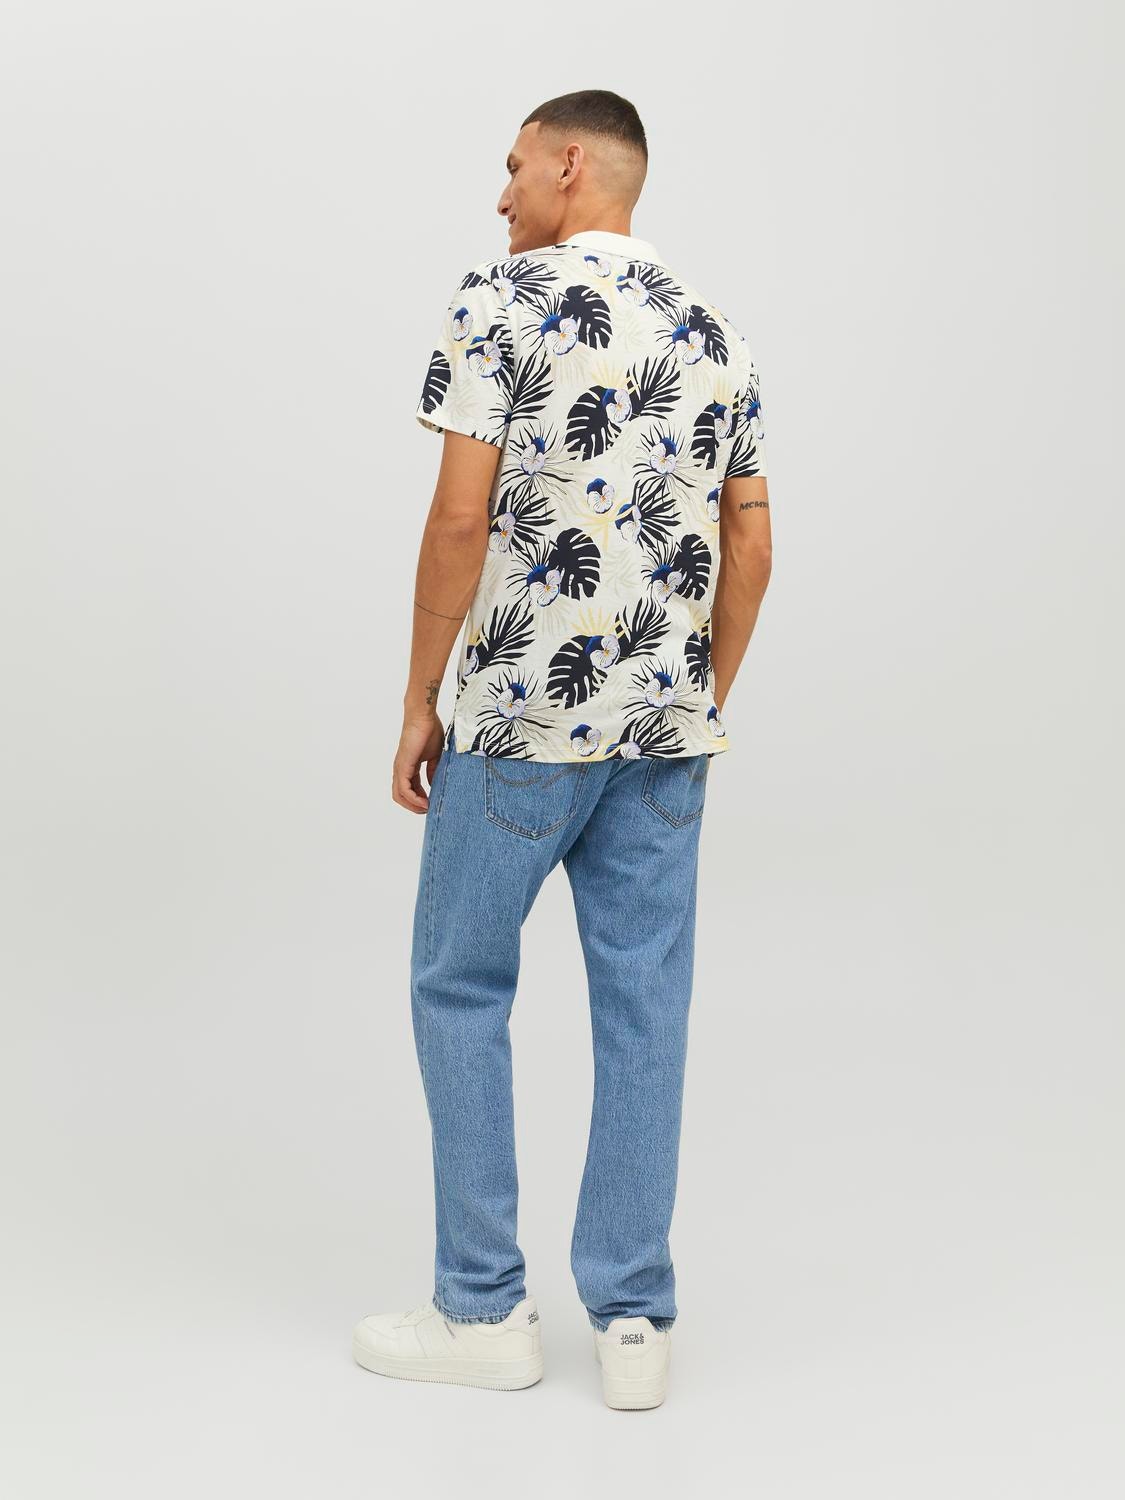 Jack & Jones All Over Print Shirt collar T-shirt -Cloud Dancer - 12234223